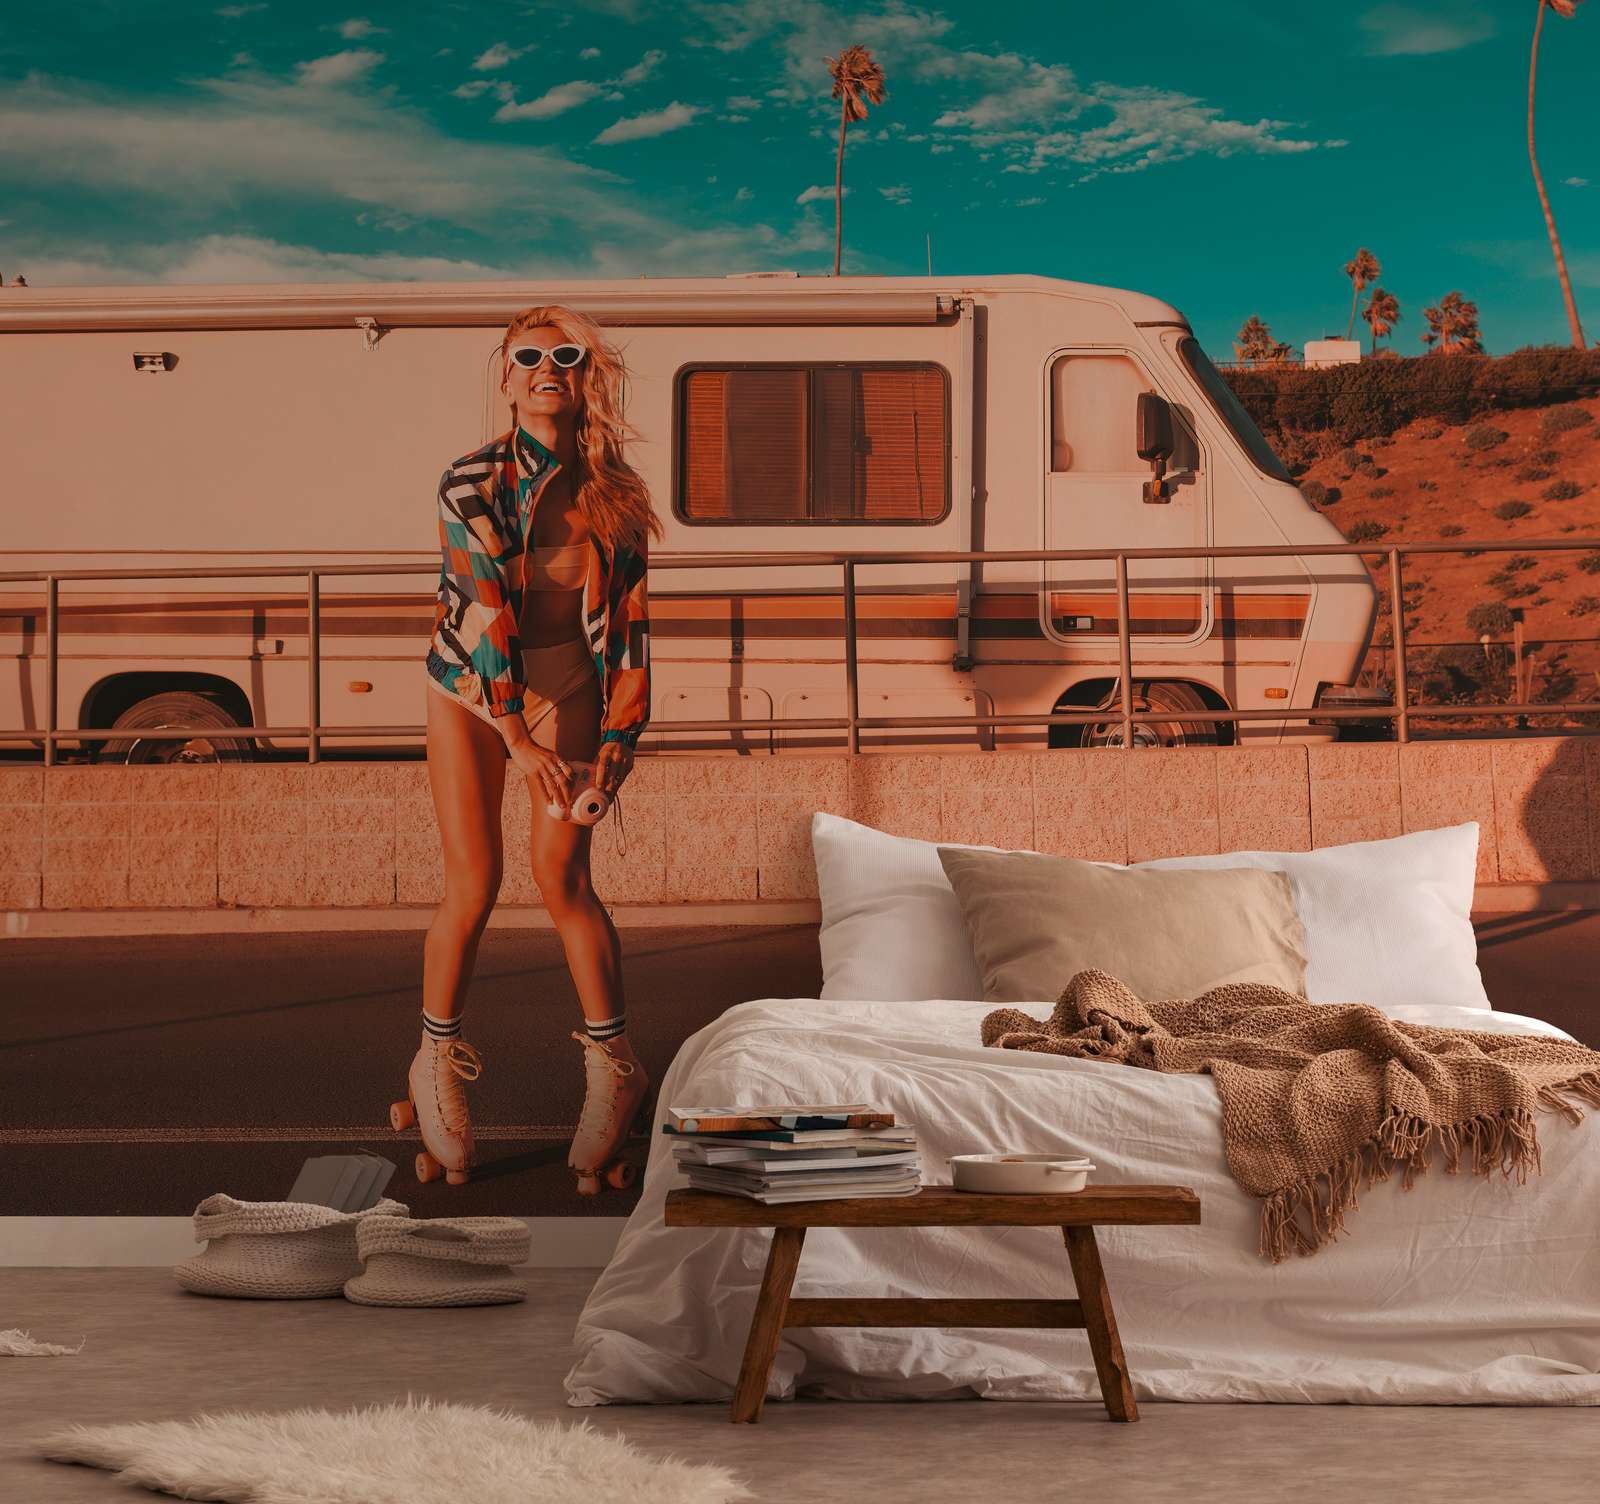             Papier peint avec skater girl et camper en vibe d'été - bleu, orange, beige
        